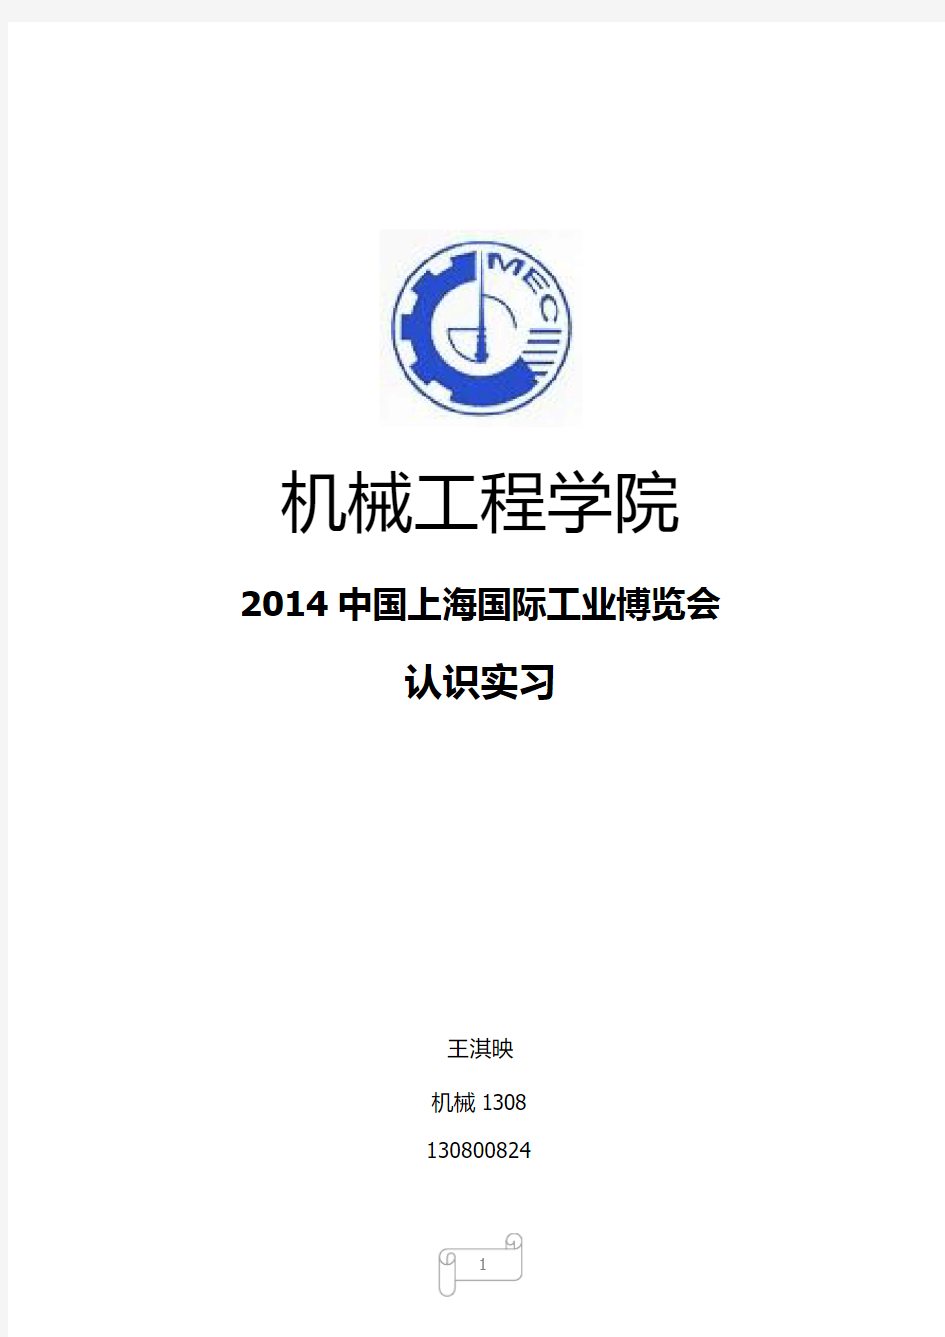 关于2014中国国际工业博览会数控机床与金属加工展总结-王淇映130800824